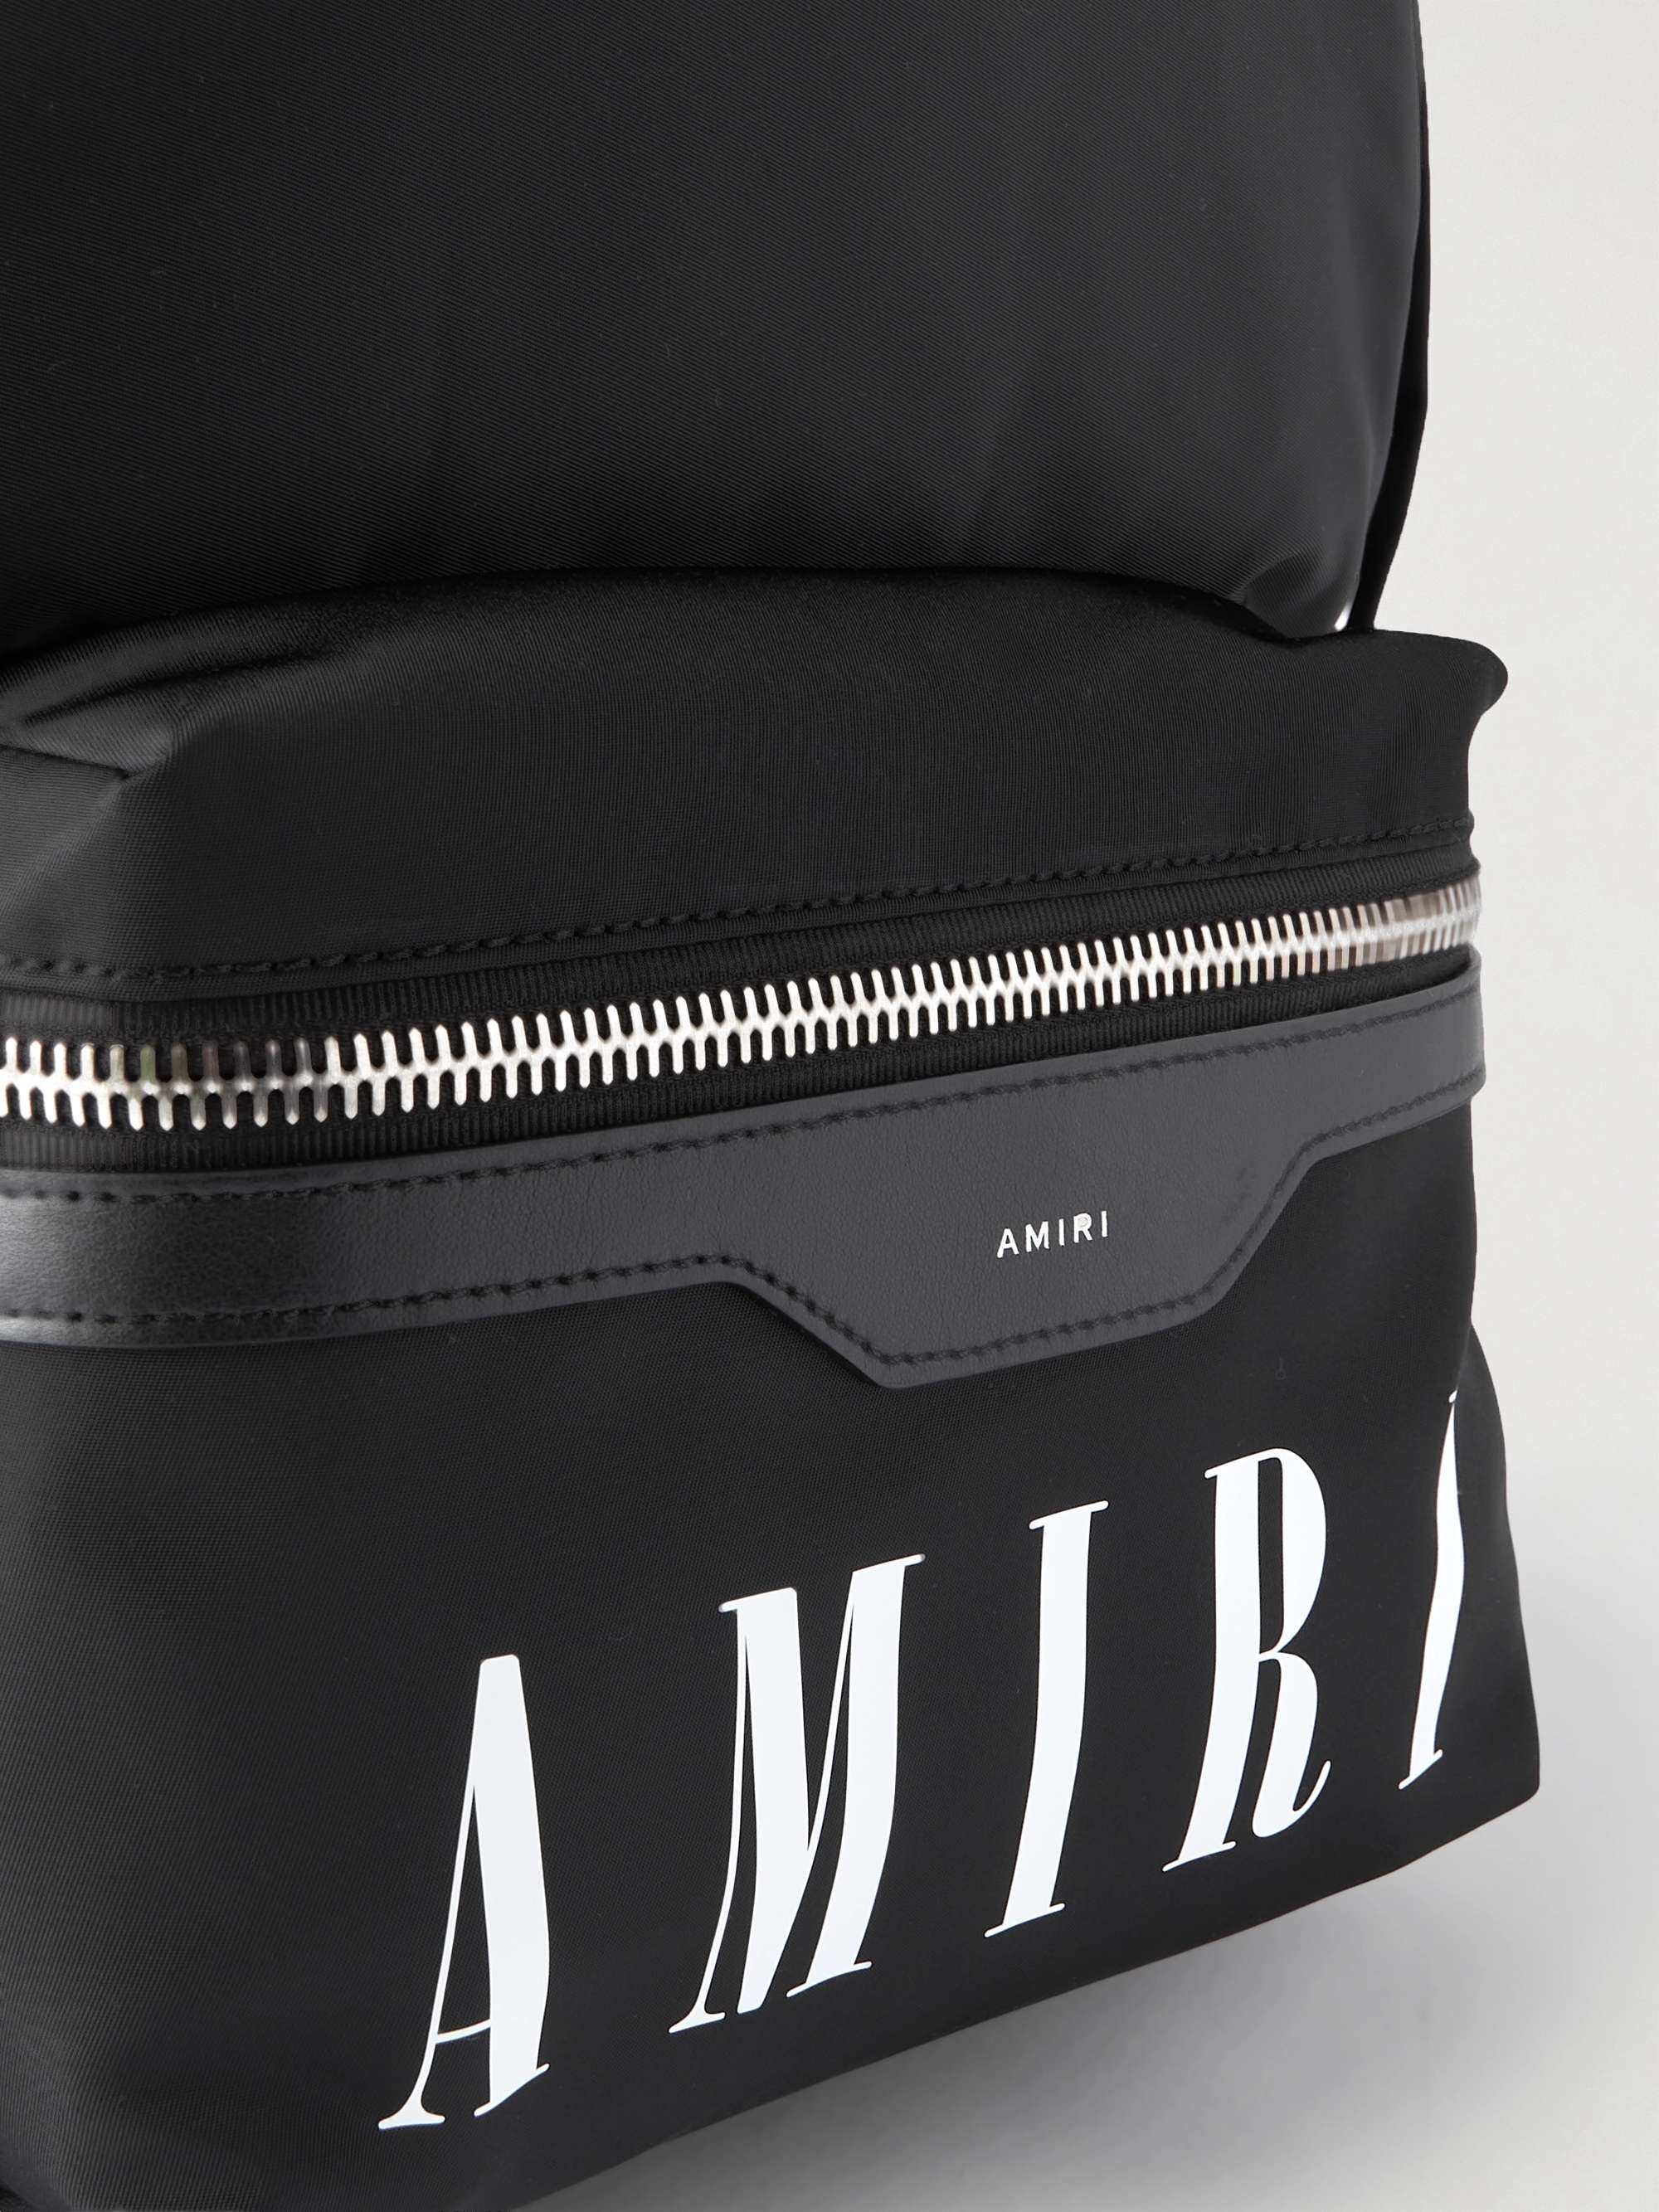 AMIRI Leather-Trimmed Logo-Print Nylon Backpack